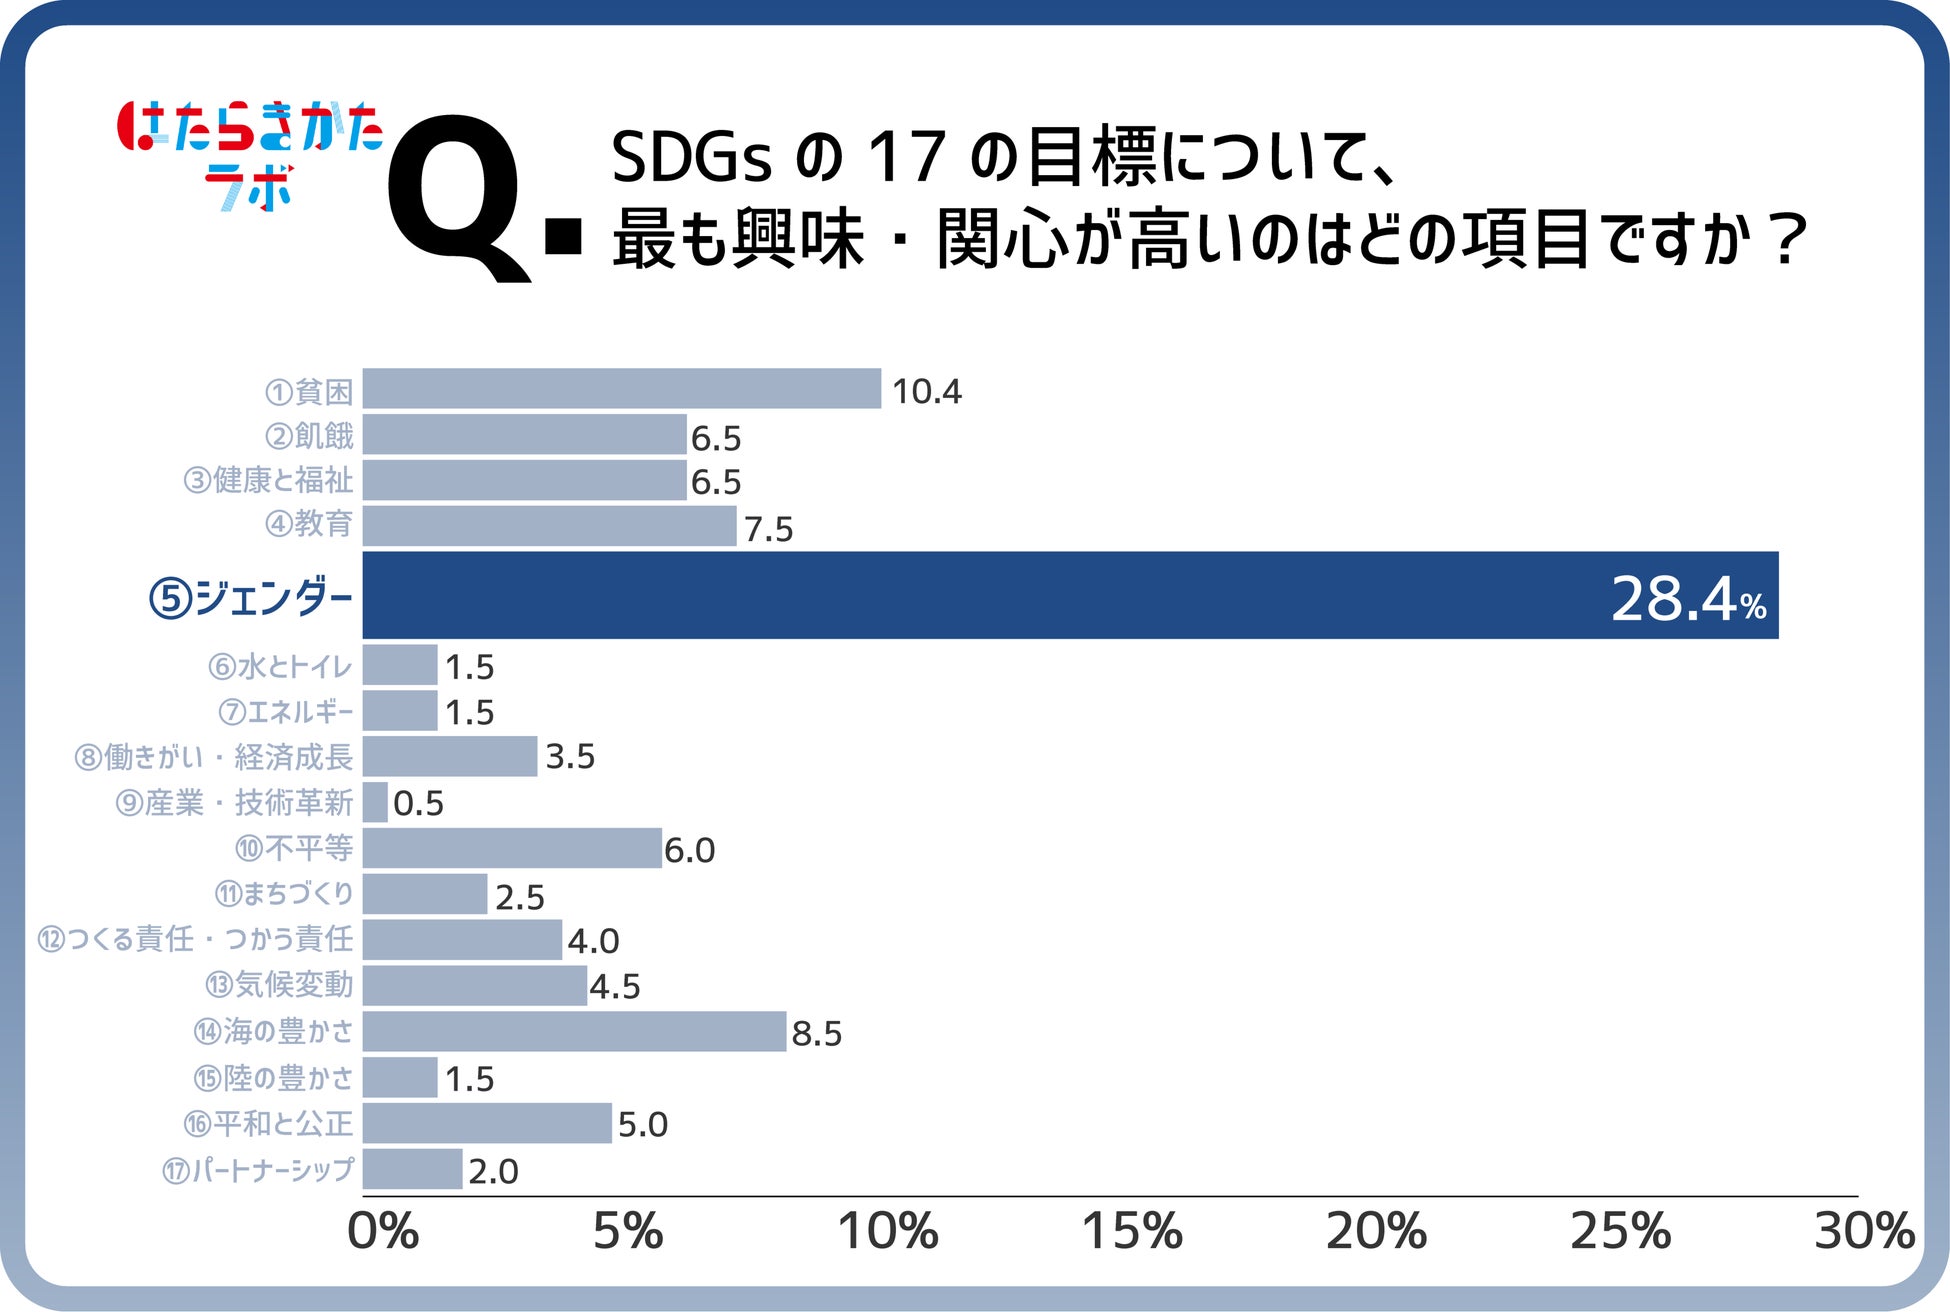 【はたらきかたラボ調査】第7回目のテーマは、SDGs。8割以上がSDGsに「興味がある」と回答。一方で「Z世代だからSDGsに興味あり」には違和感も。Z世代のSDGsに対する本音はいかに？のサブ画像4